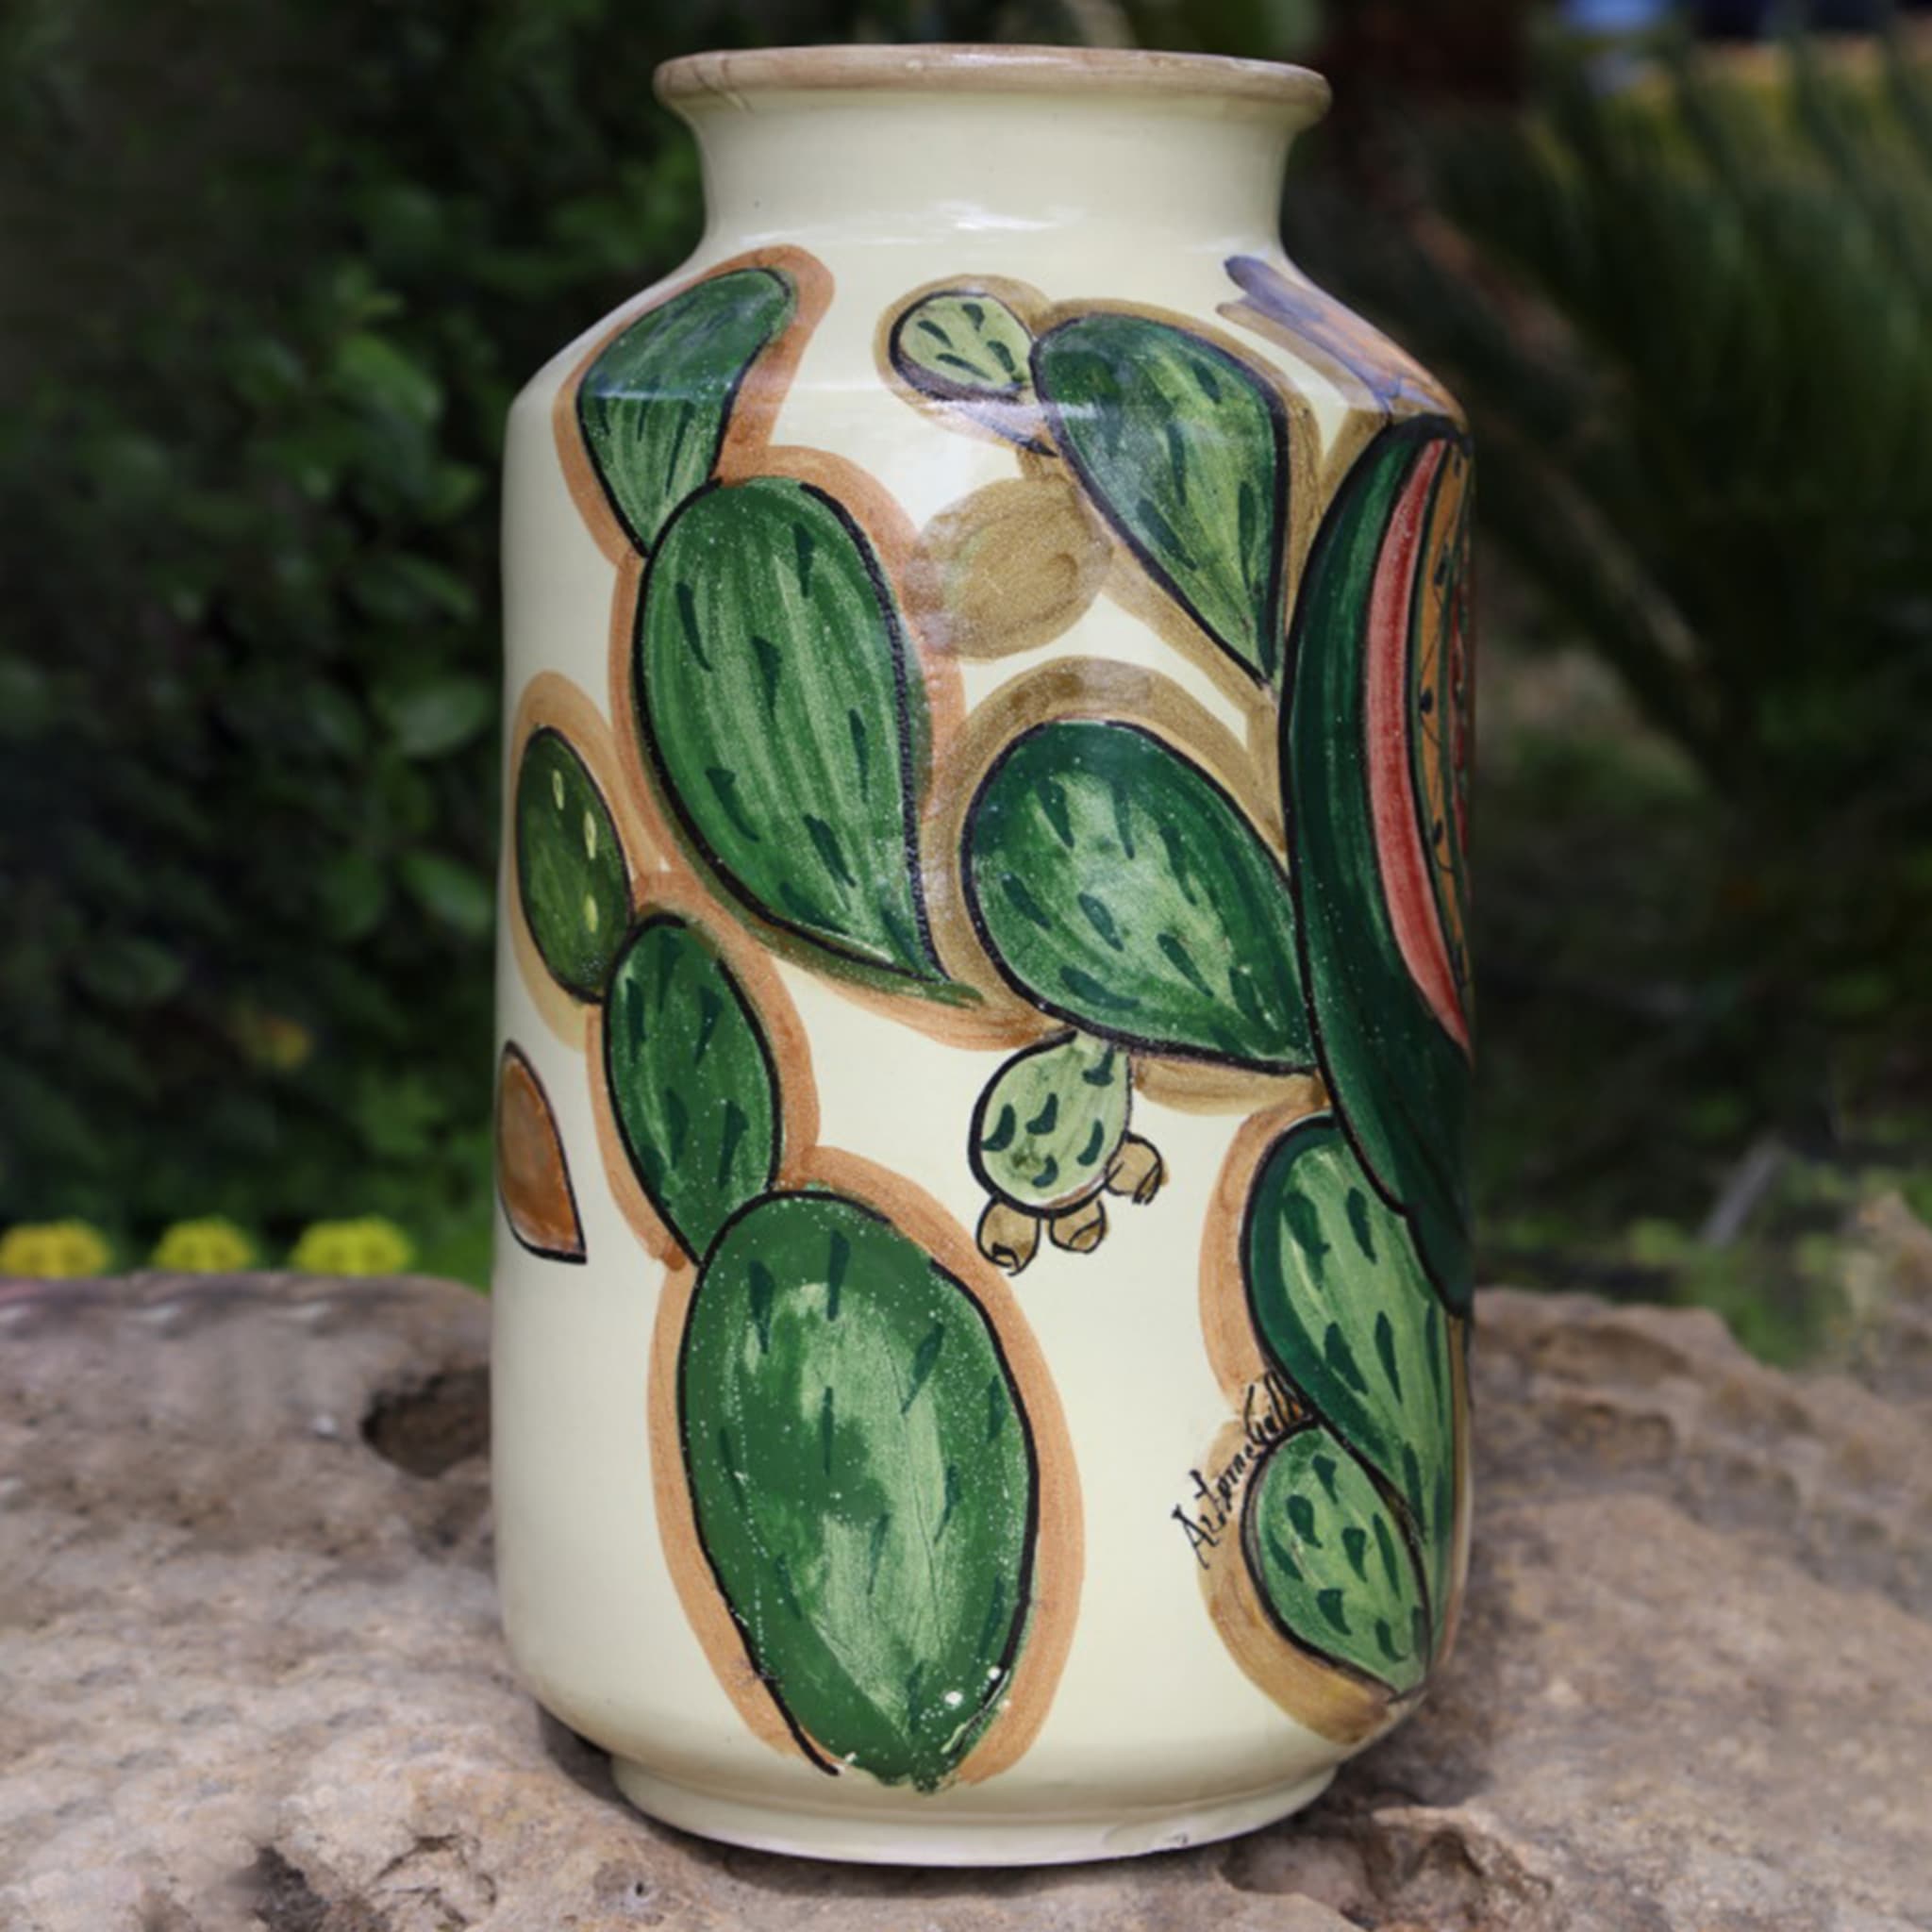 Mora Siciliana Ceramic Vase - Alternative view 1